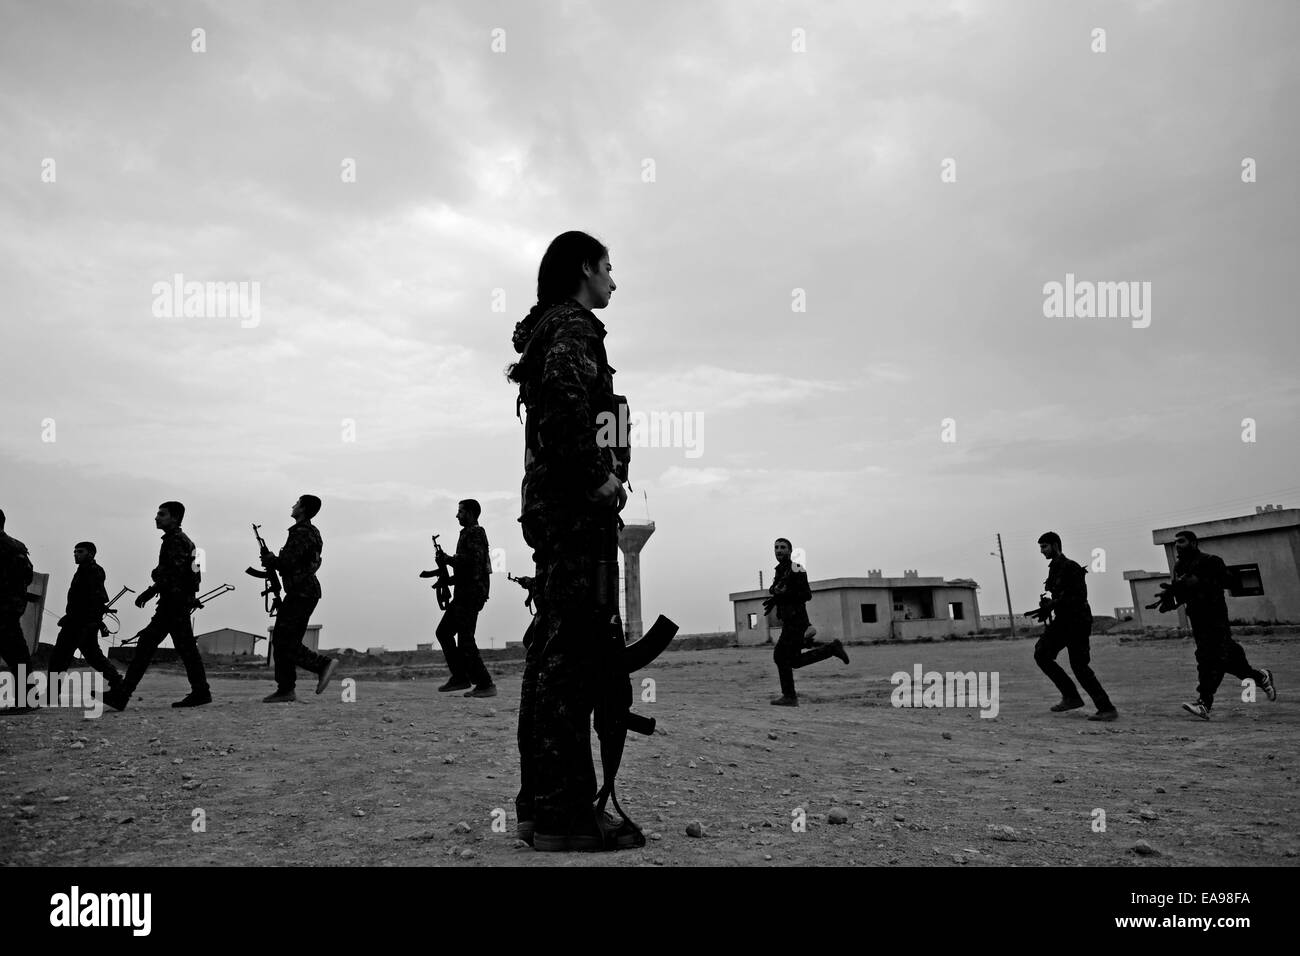 Combattenti curdi delle unità di protezione del popolo YPG e il Unità di protezione delle donne YPJ che partecipano alla cerimonia di assunzione Un campo di addestramento in al Hasakah o distretto di Hassakeh conosciuto Come Rojava la regione autonoma de facto curda originaria E costituito da tre cantoni autonomi nel nord della Siria Foto Stock